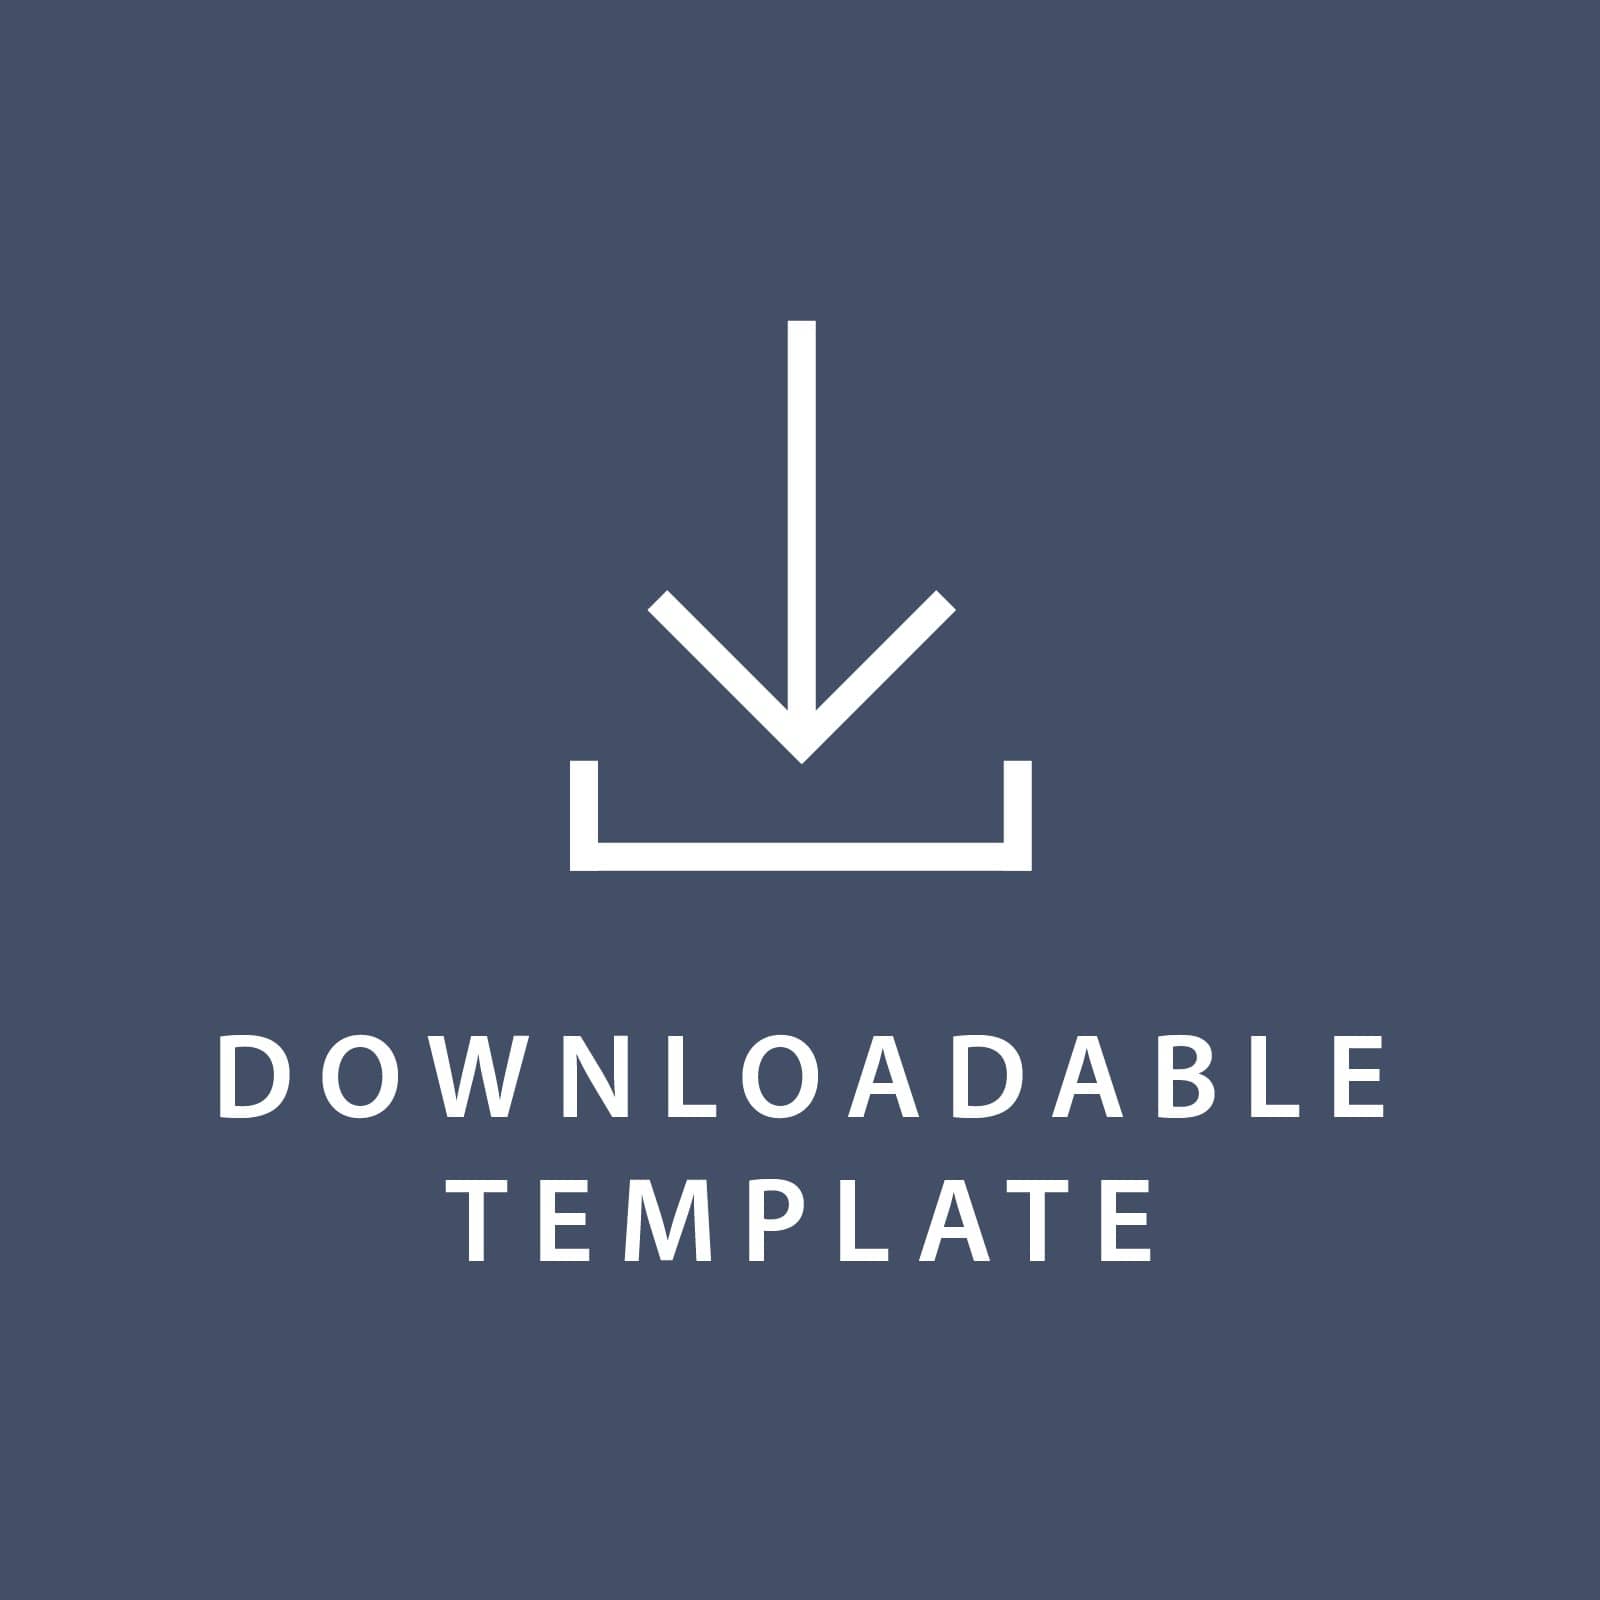 Template for 5.5 x 8.5 Invitations Gartner Studios Template tmplt0825